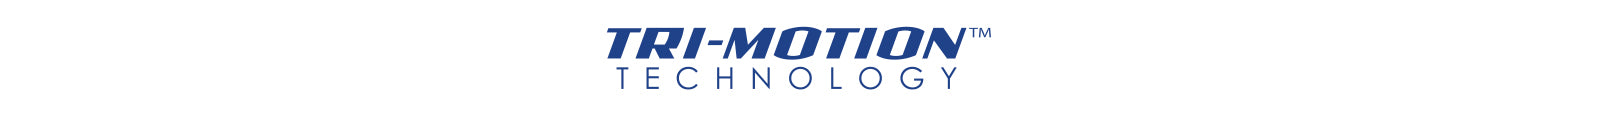 Tri-Motion™ Technology logo